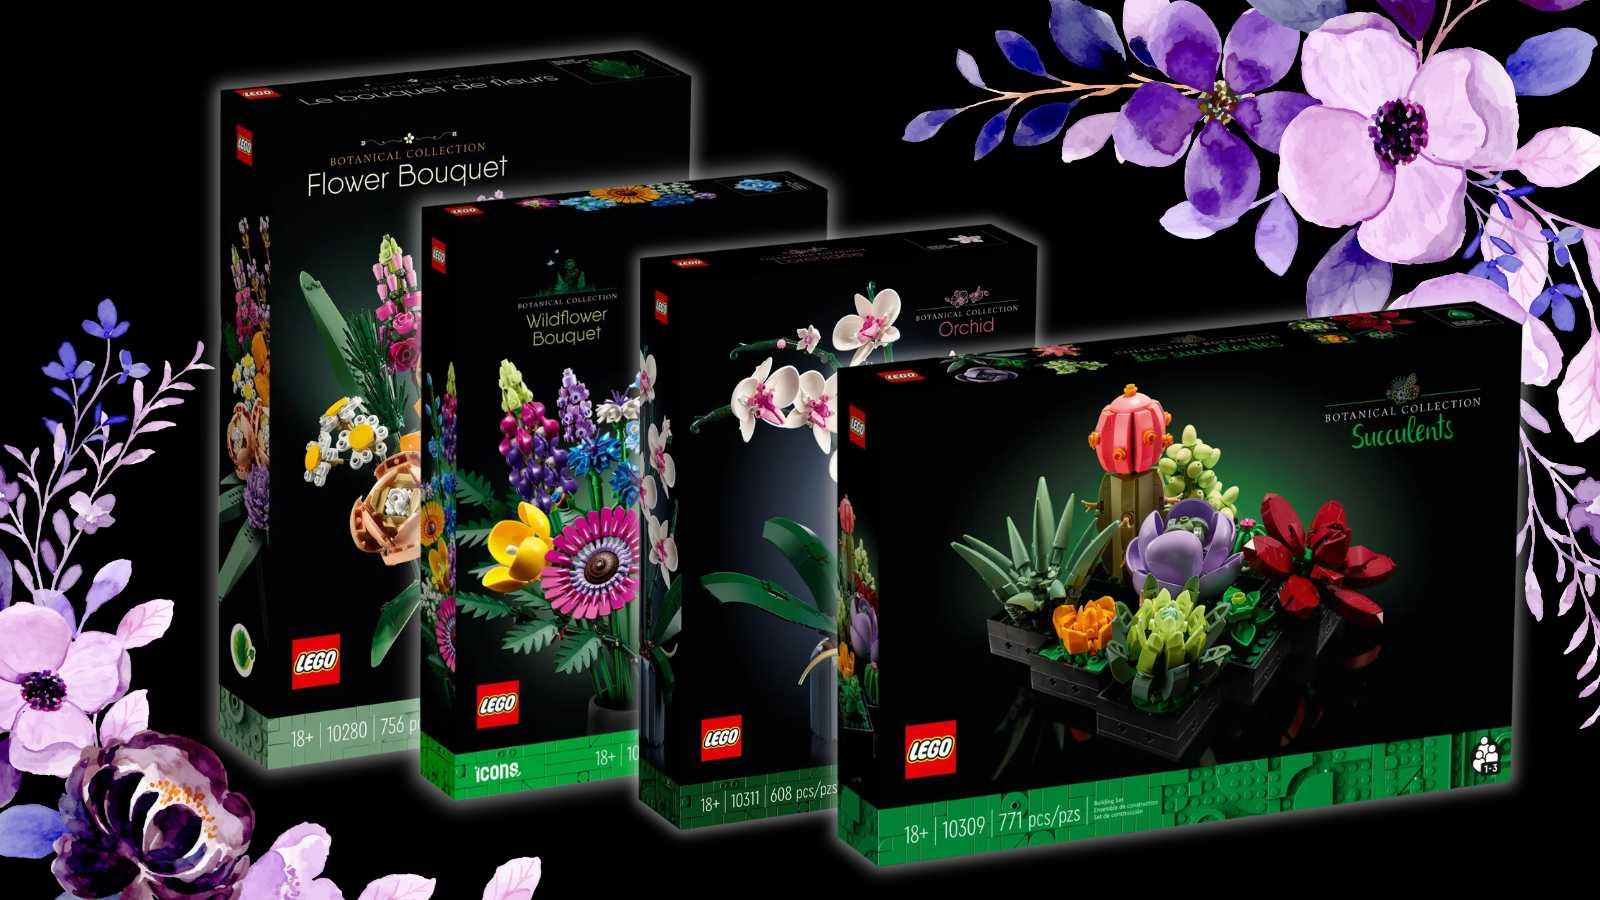 LEGO flowers & plants get even more discounts at Walmart - Dexerto